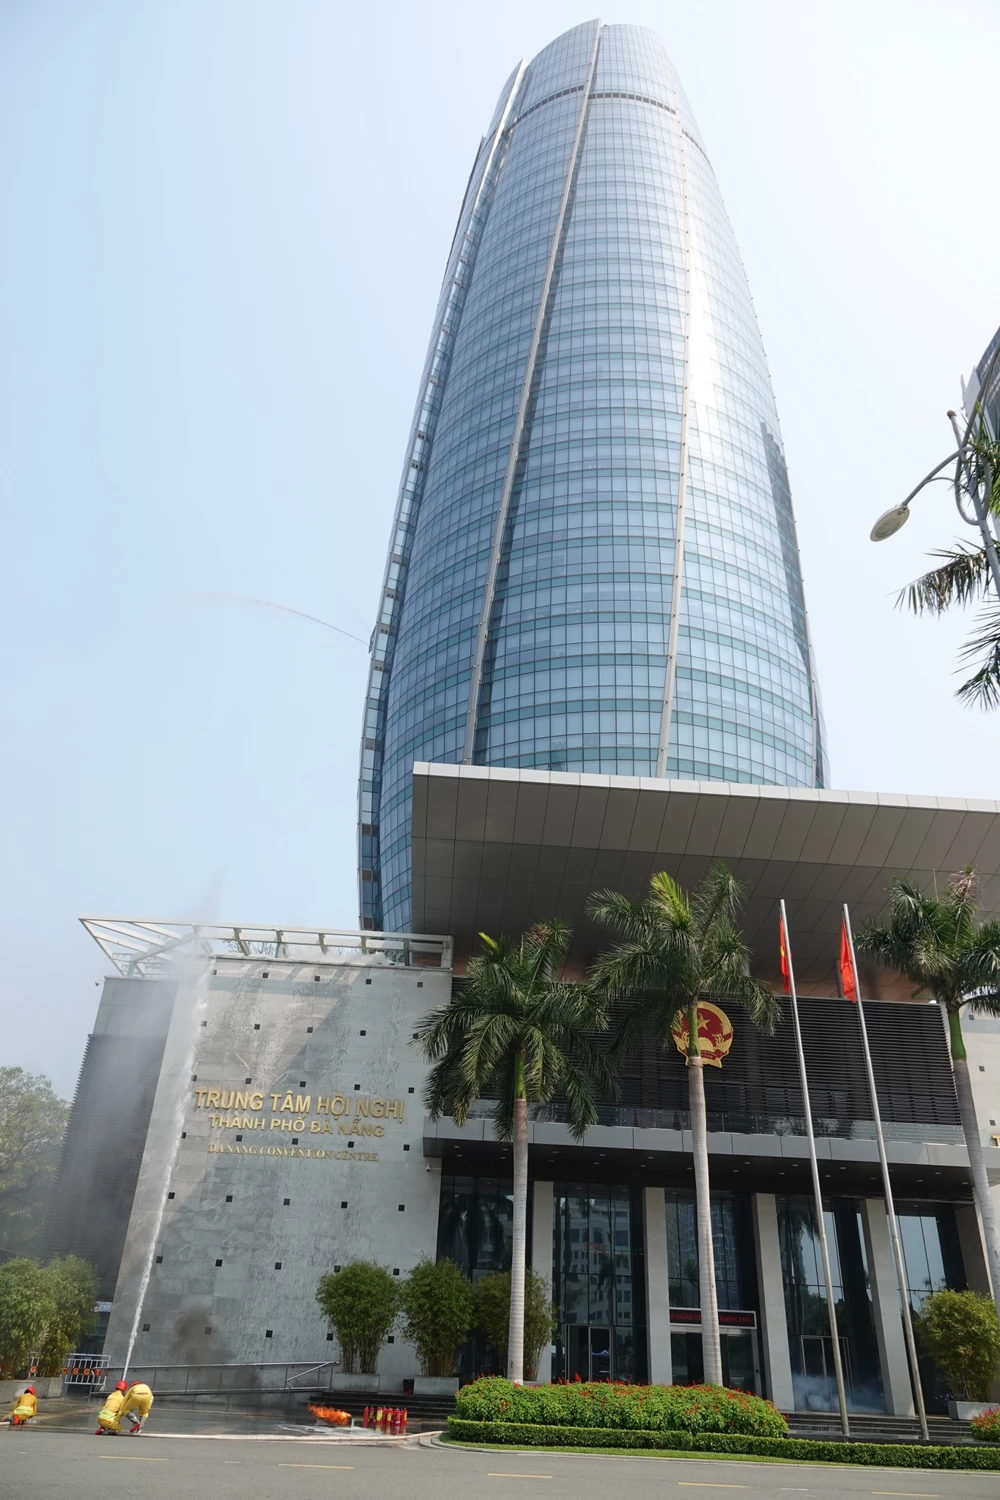 Trung tâm hành chính TP Đà Nẵng là nơi làm việc của sở ngành TP Đà Nẵng với 36 tầng (34 tầng, 2 tầng hầm). Ảnh: XUÂN QUỲNH